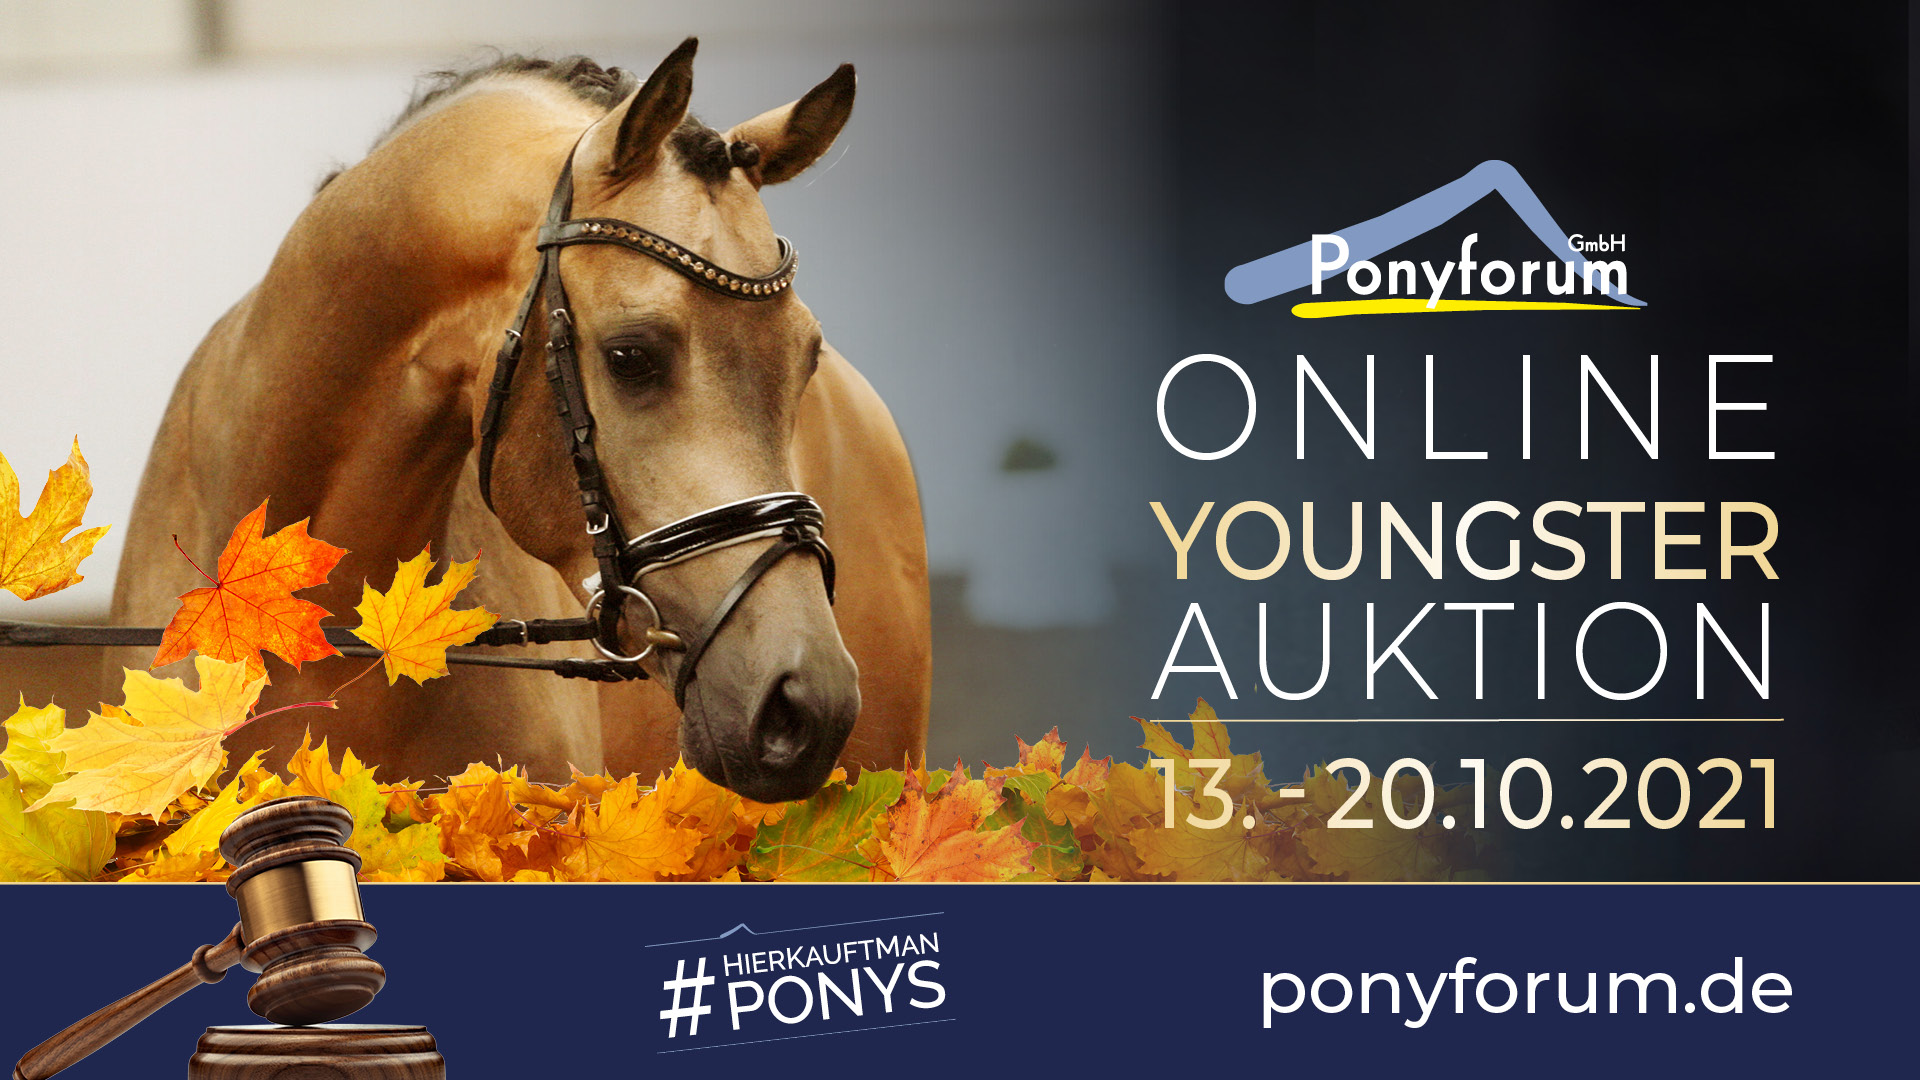 Ponyforum GmbH: 27 Youngster in der aktuellen Online Auktion!